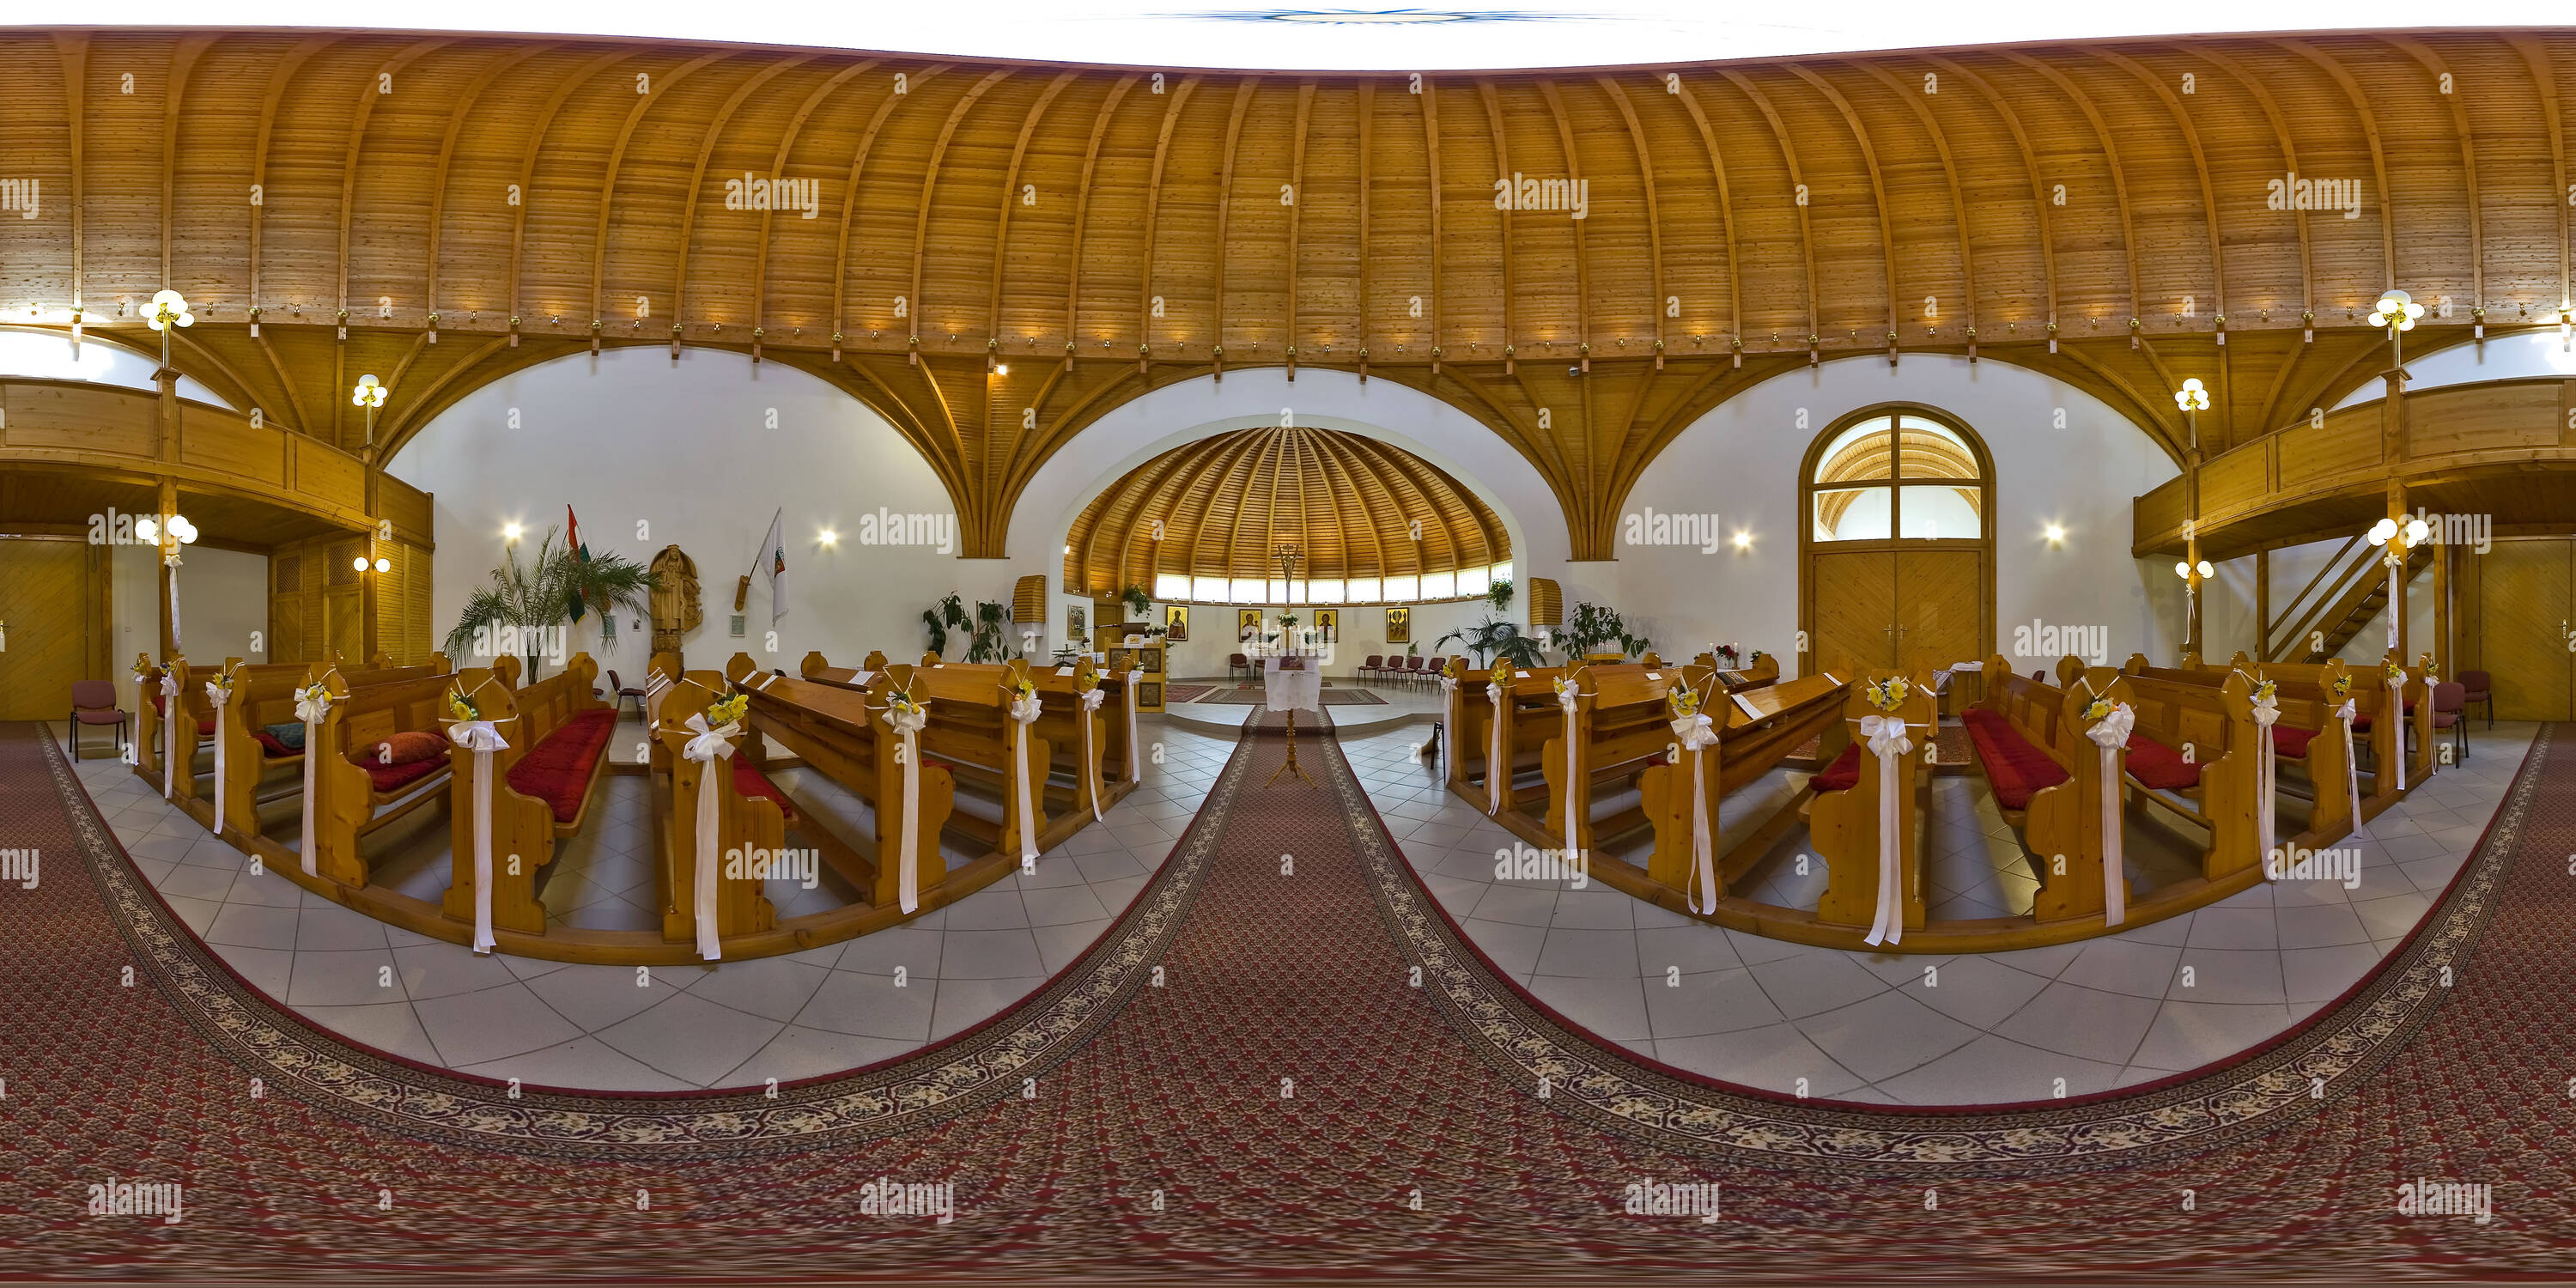 Visualizzazione panoramica a 360 gradi di Chiesa greco-cattolica all'interno - plannig Imre Makovecz